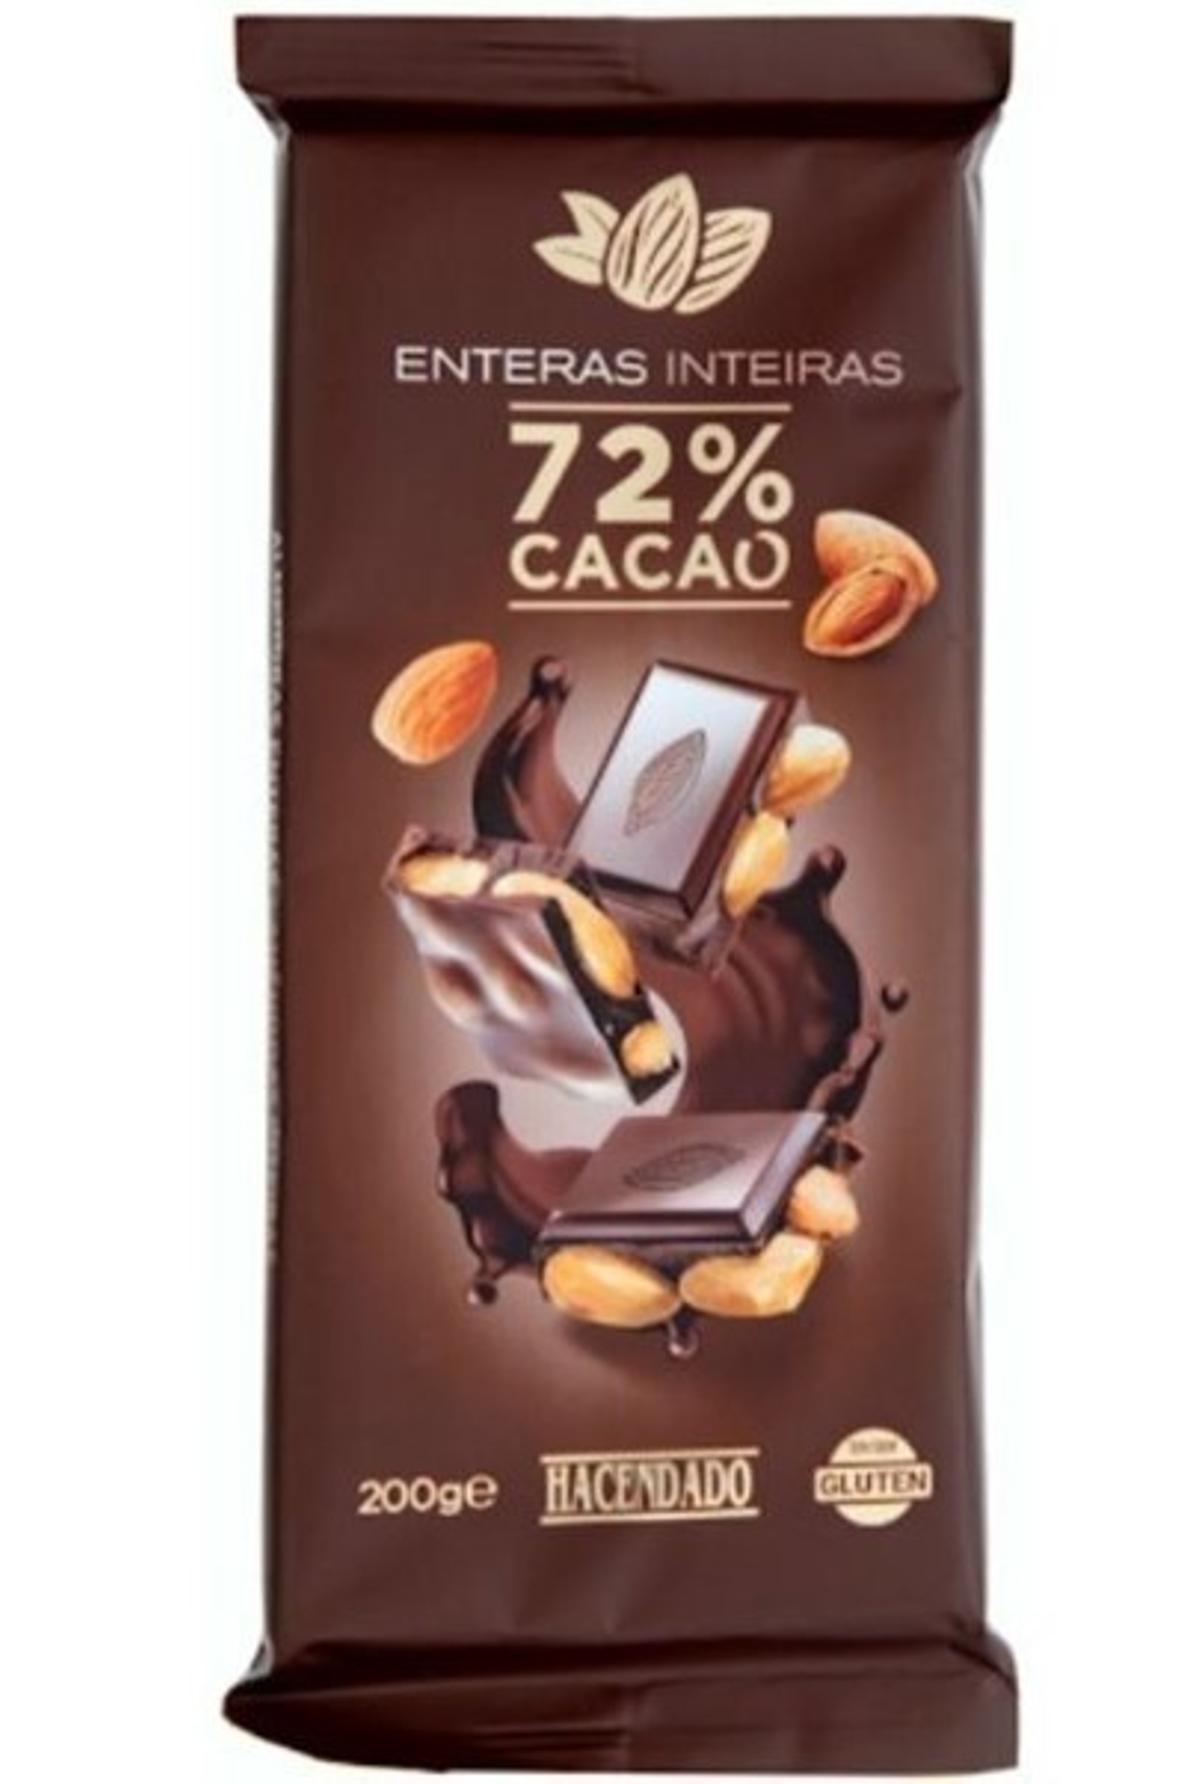 Imagen de la marca del chocolate.